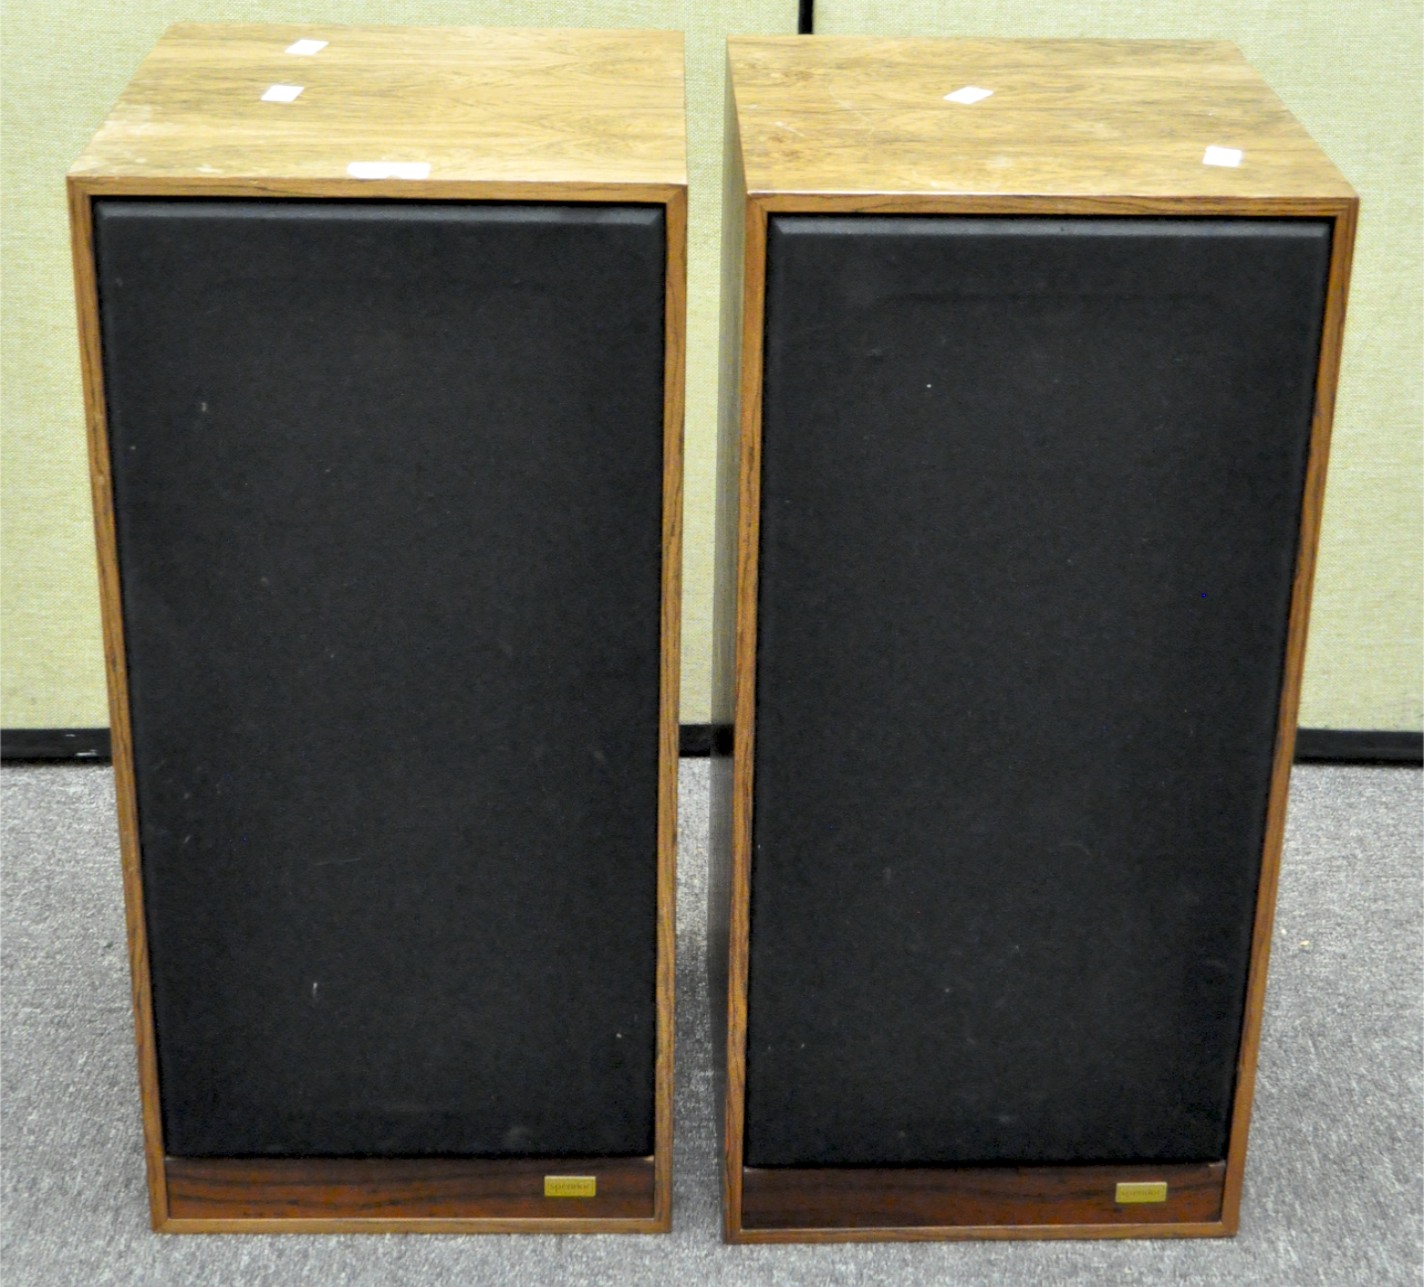 A pair of Spendor SP1 speakers 64 cm x 30 cm x 30 cm